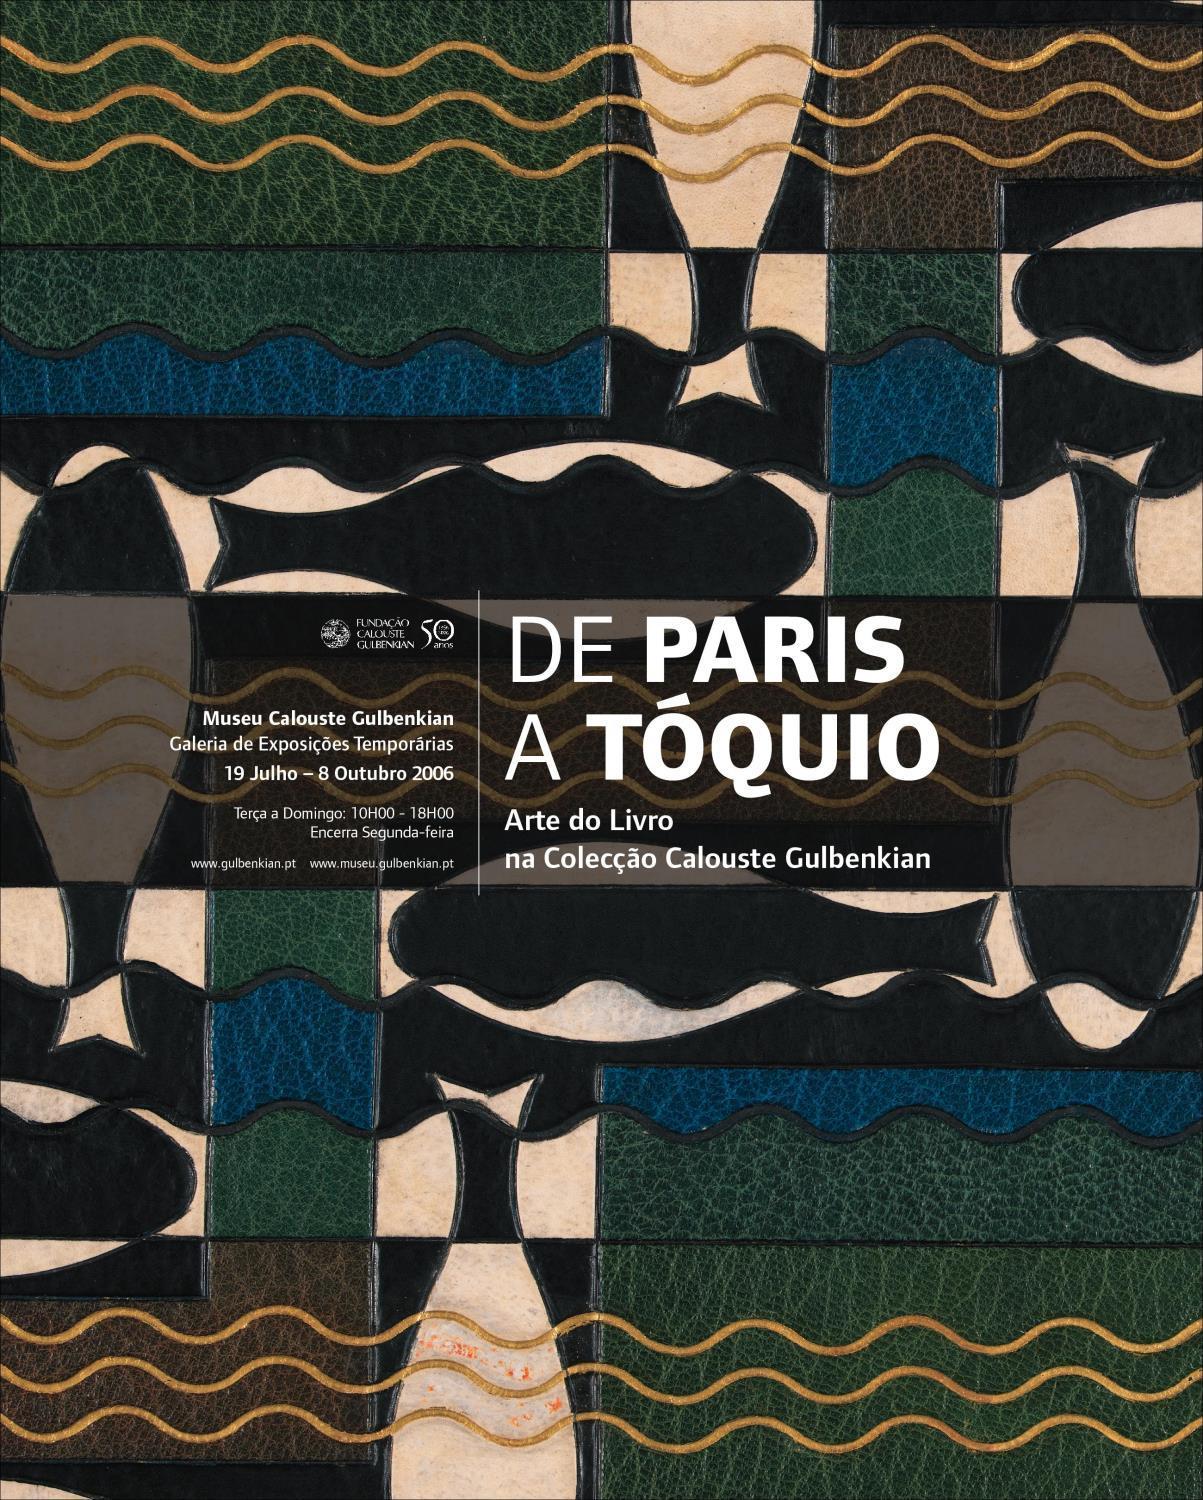 De Paris a Tóquio. Arte do Livro na Colecção Calouste Gulbenkian